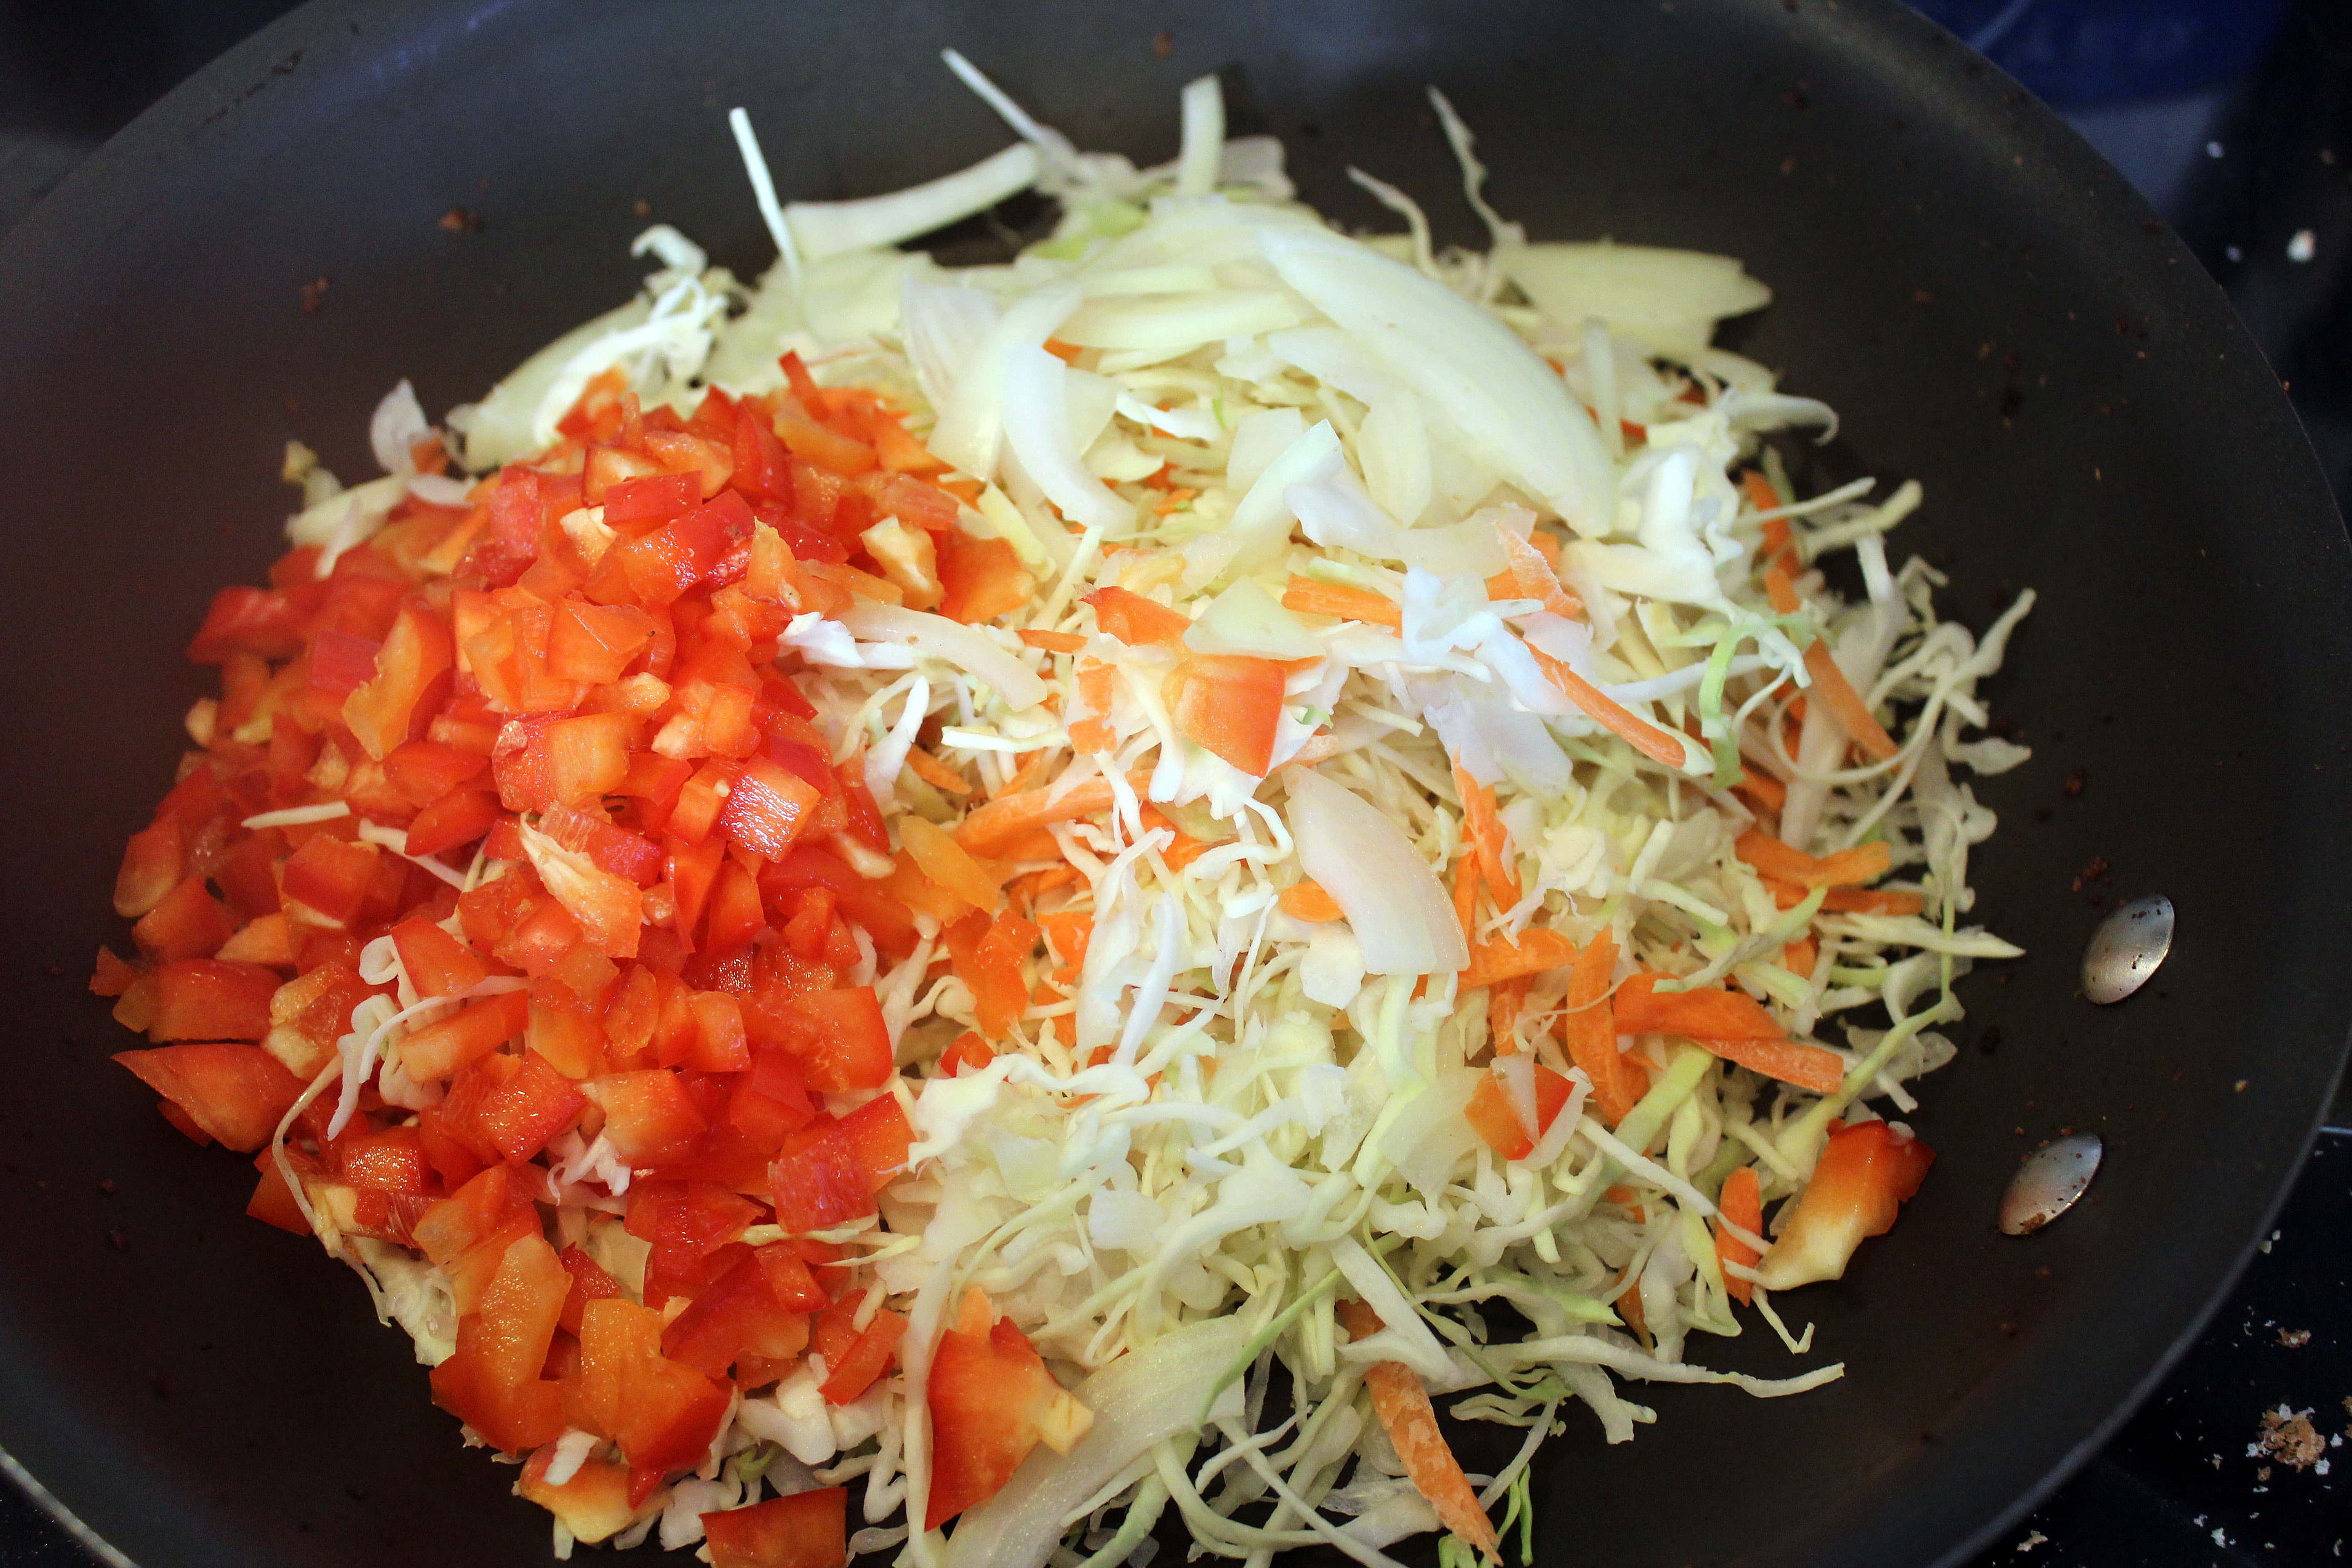 Add veggies to the pan